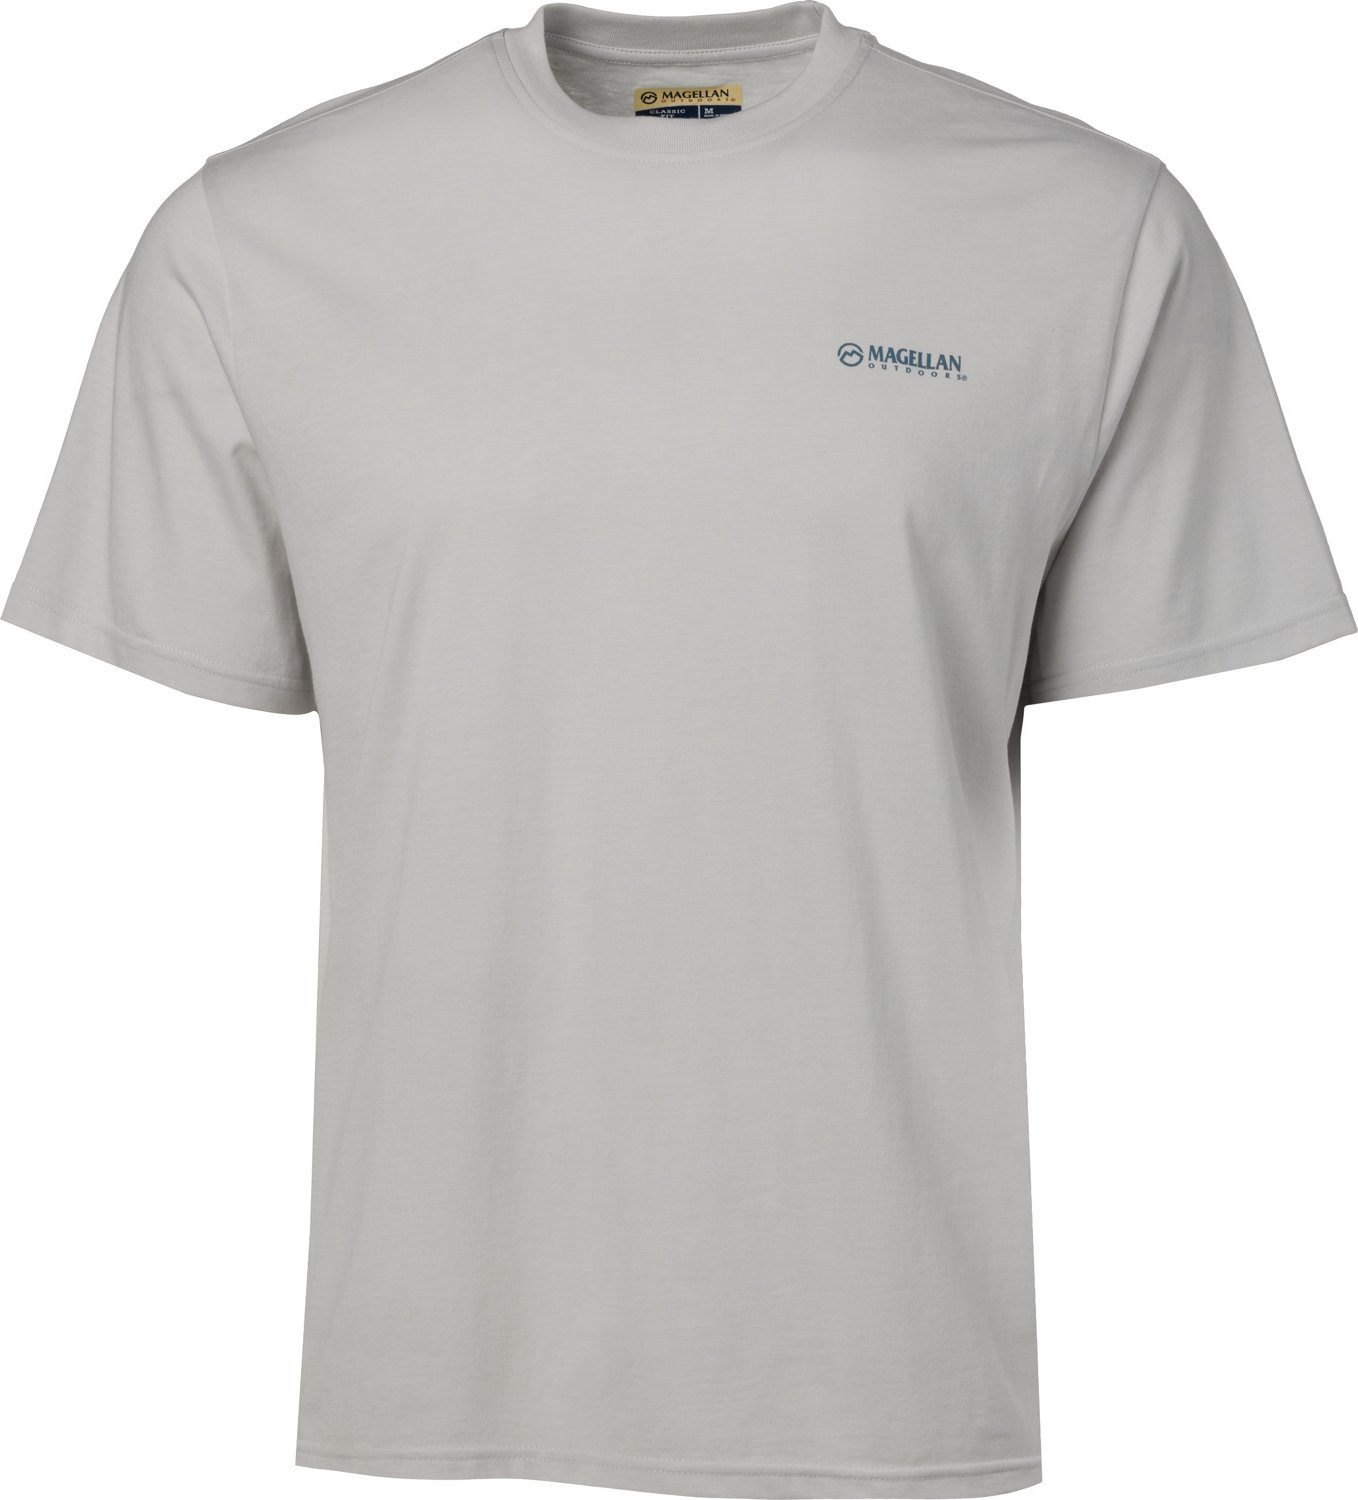 Magellan Outdoors Men's Texas GUITAR Short Sleeve Graphic T-shirt